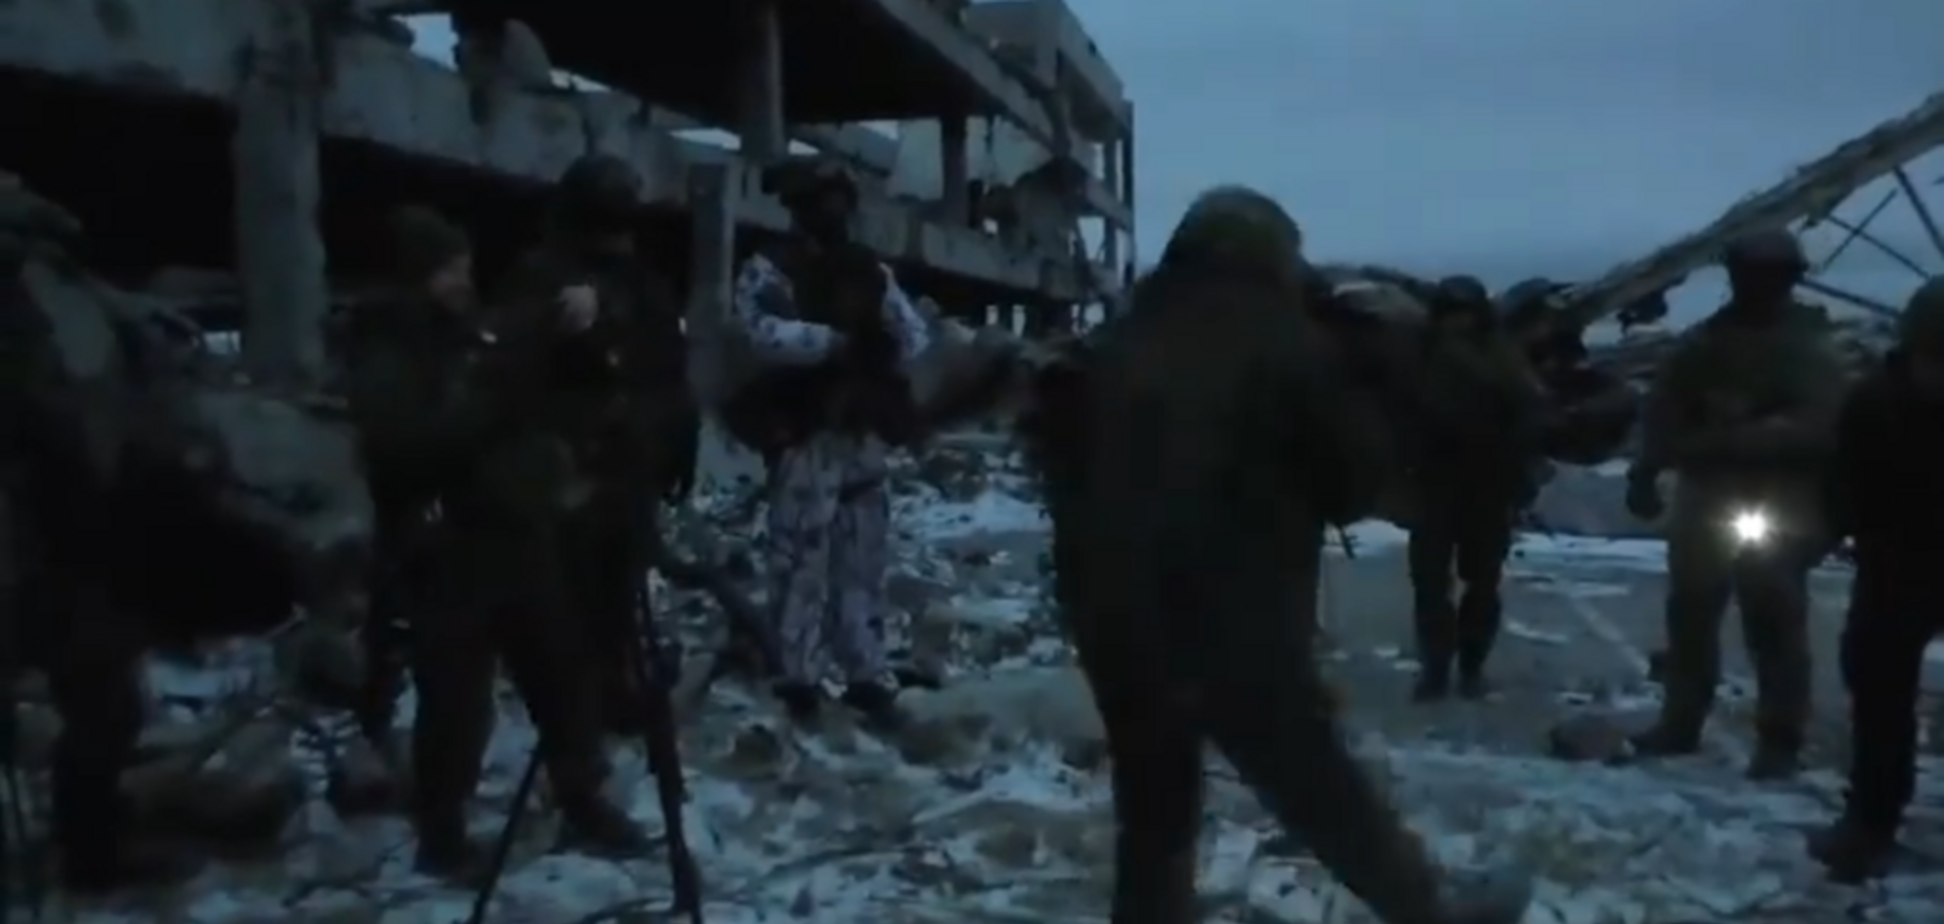 Танцуют на костях! Украинцев разозлила дерзкая выходка террористов в Донецком аэропорту. Видеофакт